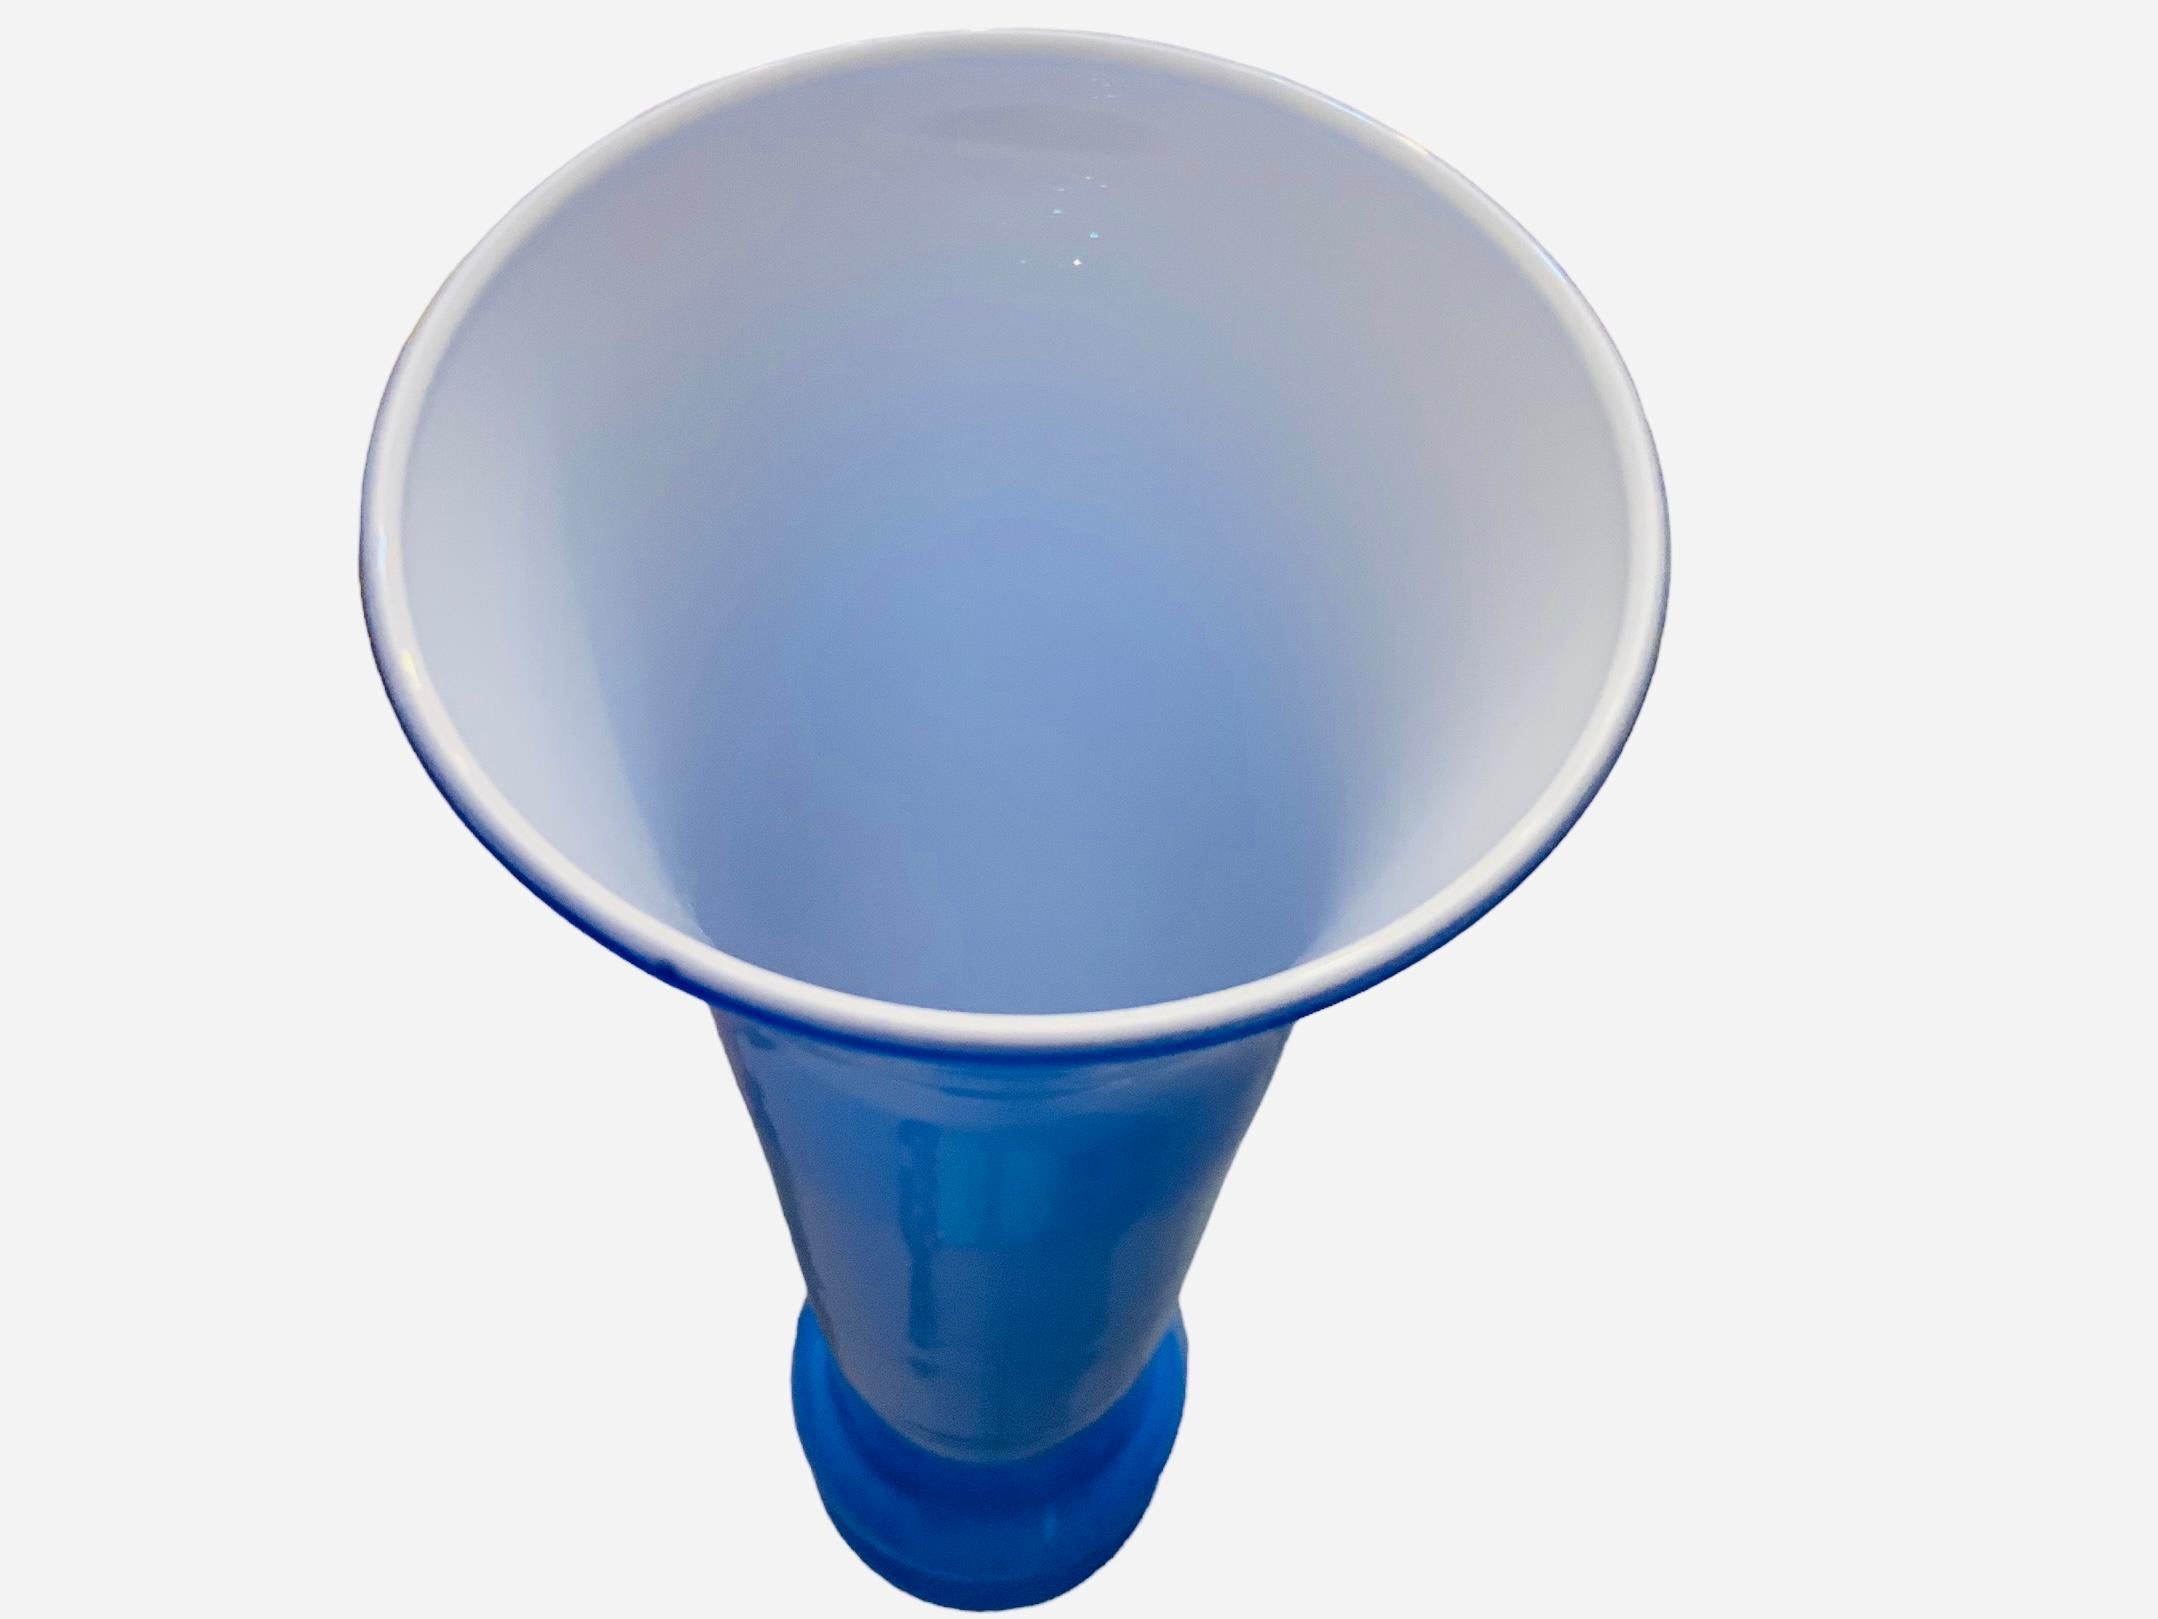 Es handelt sich um eine königsblaue und weiße Glasvase aus Art Glass. Sie zeigt einen hohen, kannelierten Sockel aus königsblauem Glas, der im unteren Teil mit zwei Ringen aus demselben Glas verziert ist. Die Innenseite der Vase ist weiß. Die Vase